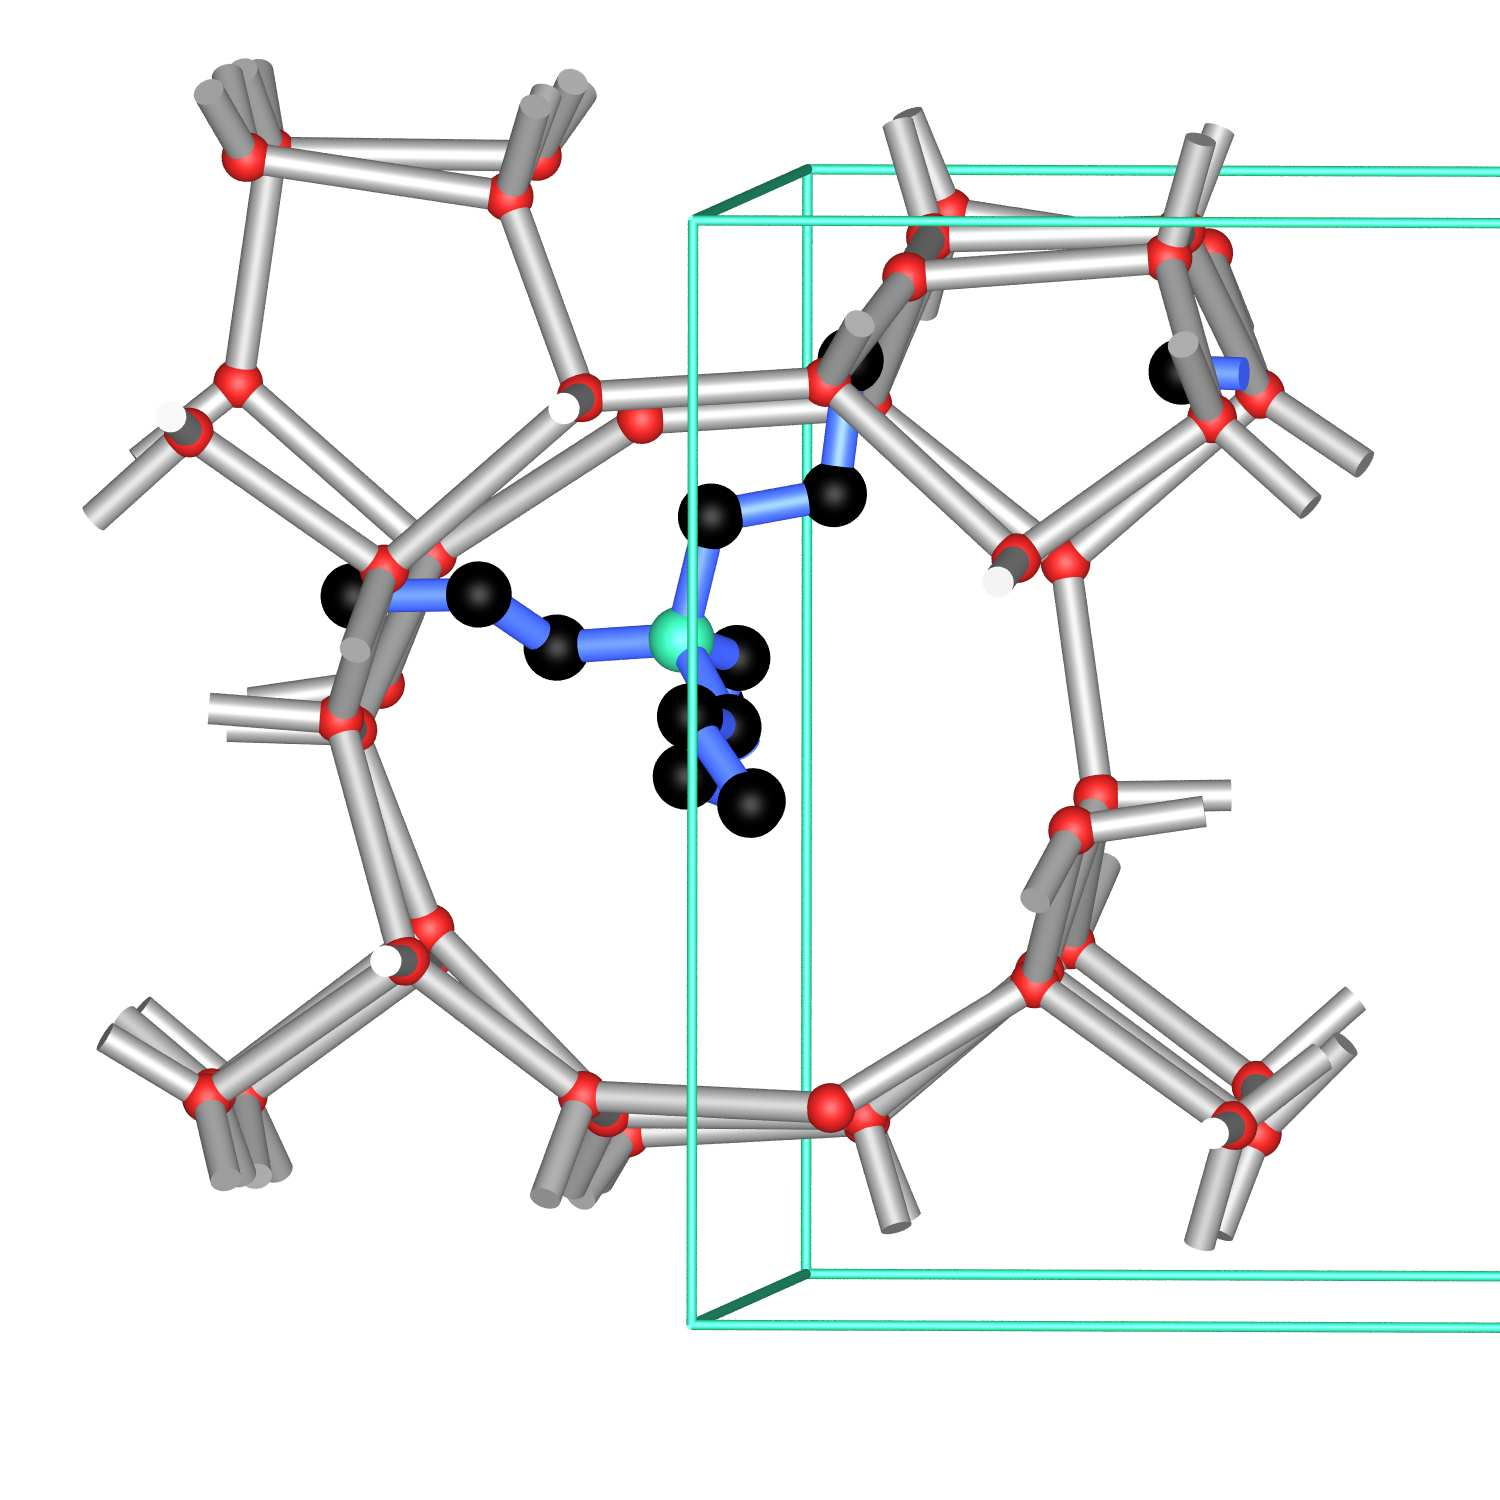 Synthese von Zeolithen hydrothermale Synthesen: 50-300 o C (unter Druck, in Autoklaven) Edukte: Silicate (Quarz, Silicagel) und Aluminate (Tonerde), in Natronlauge gelöst ggf.